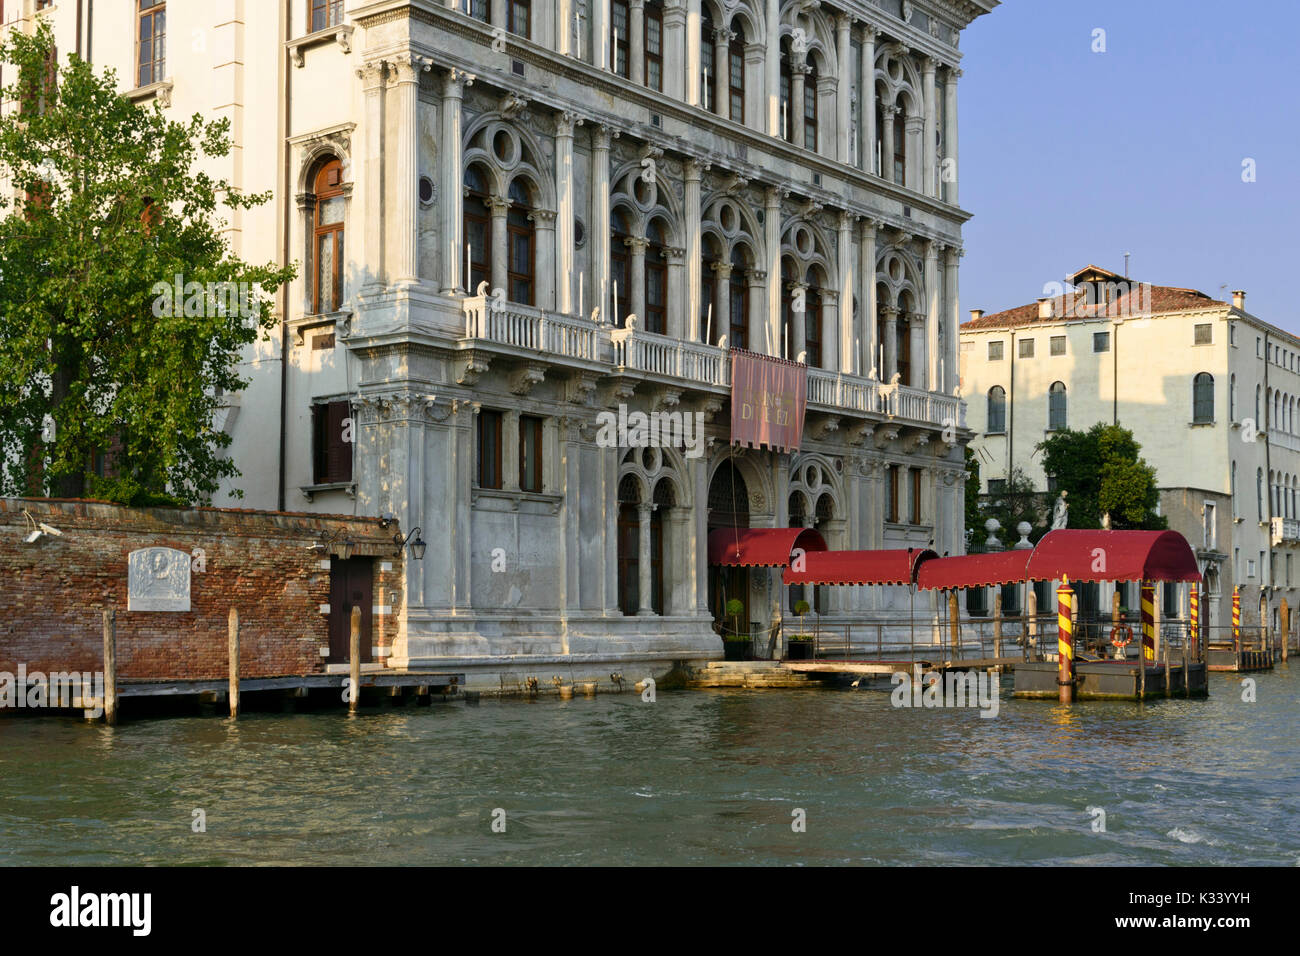 Palazzo Vendramin-Calergi, Venice, Italy Stock Photo - Alamy